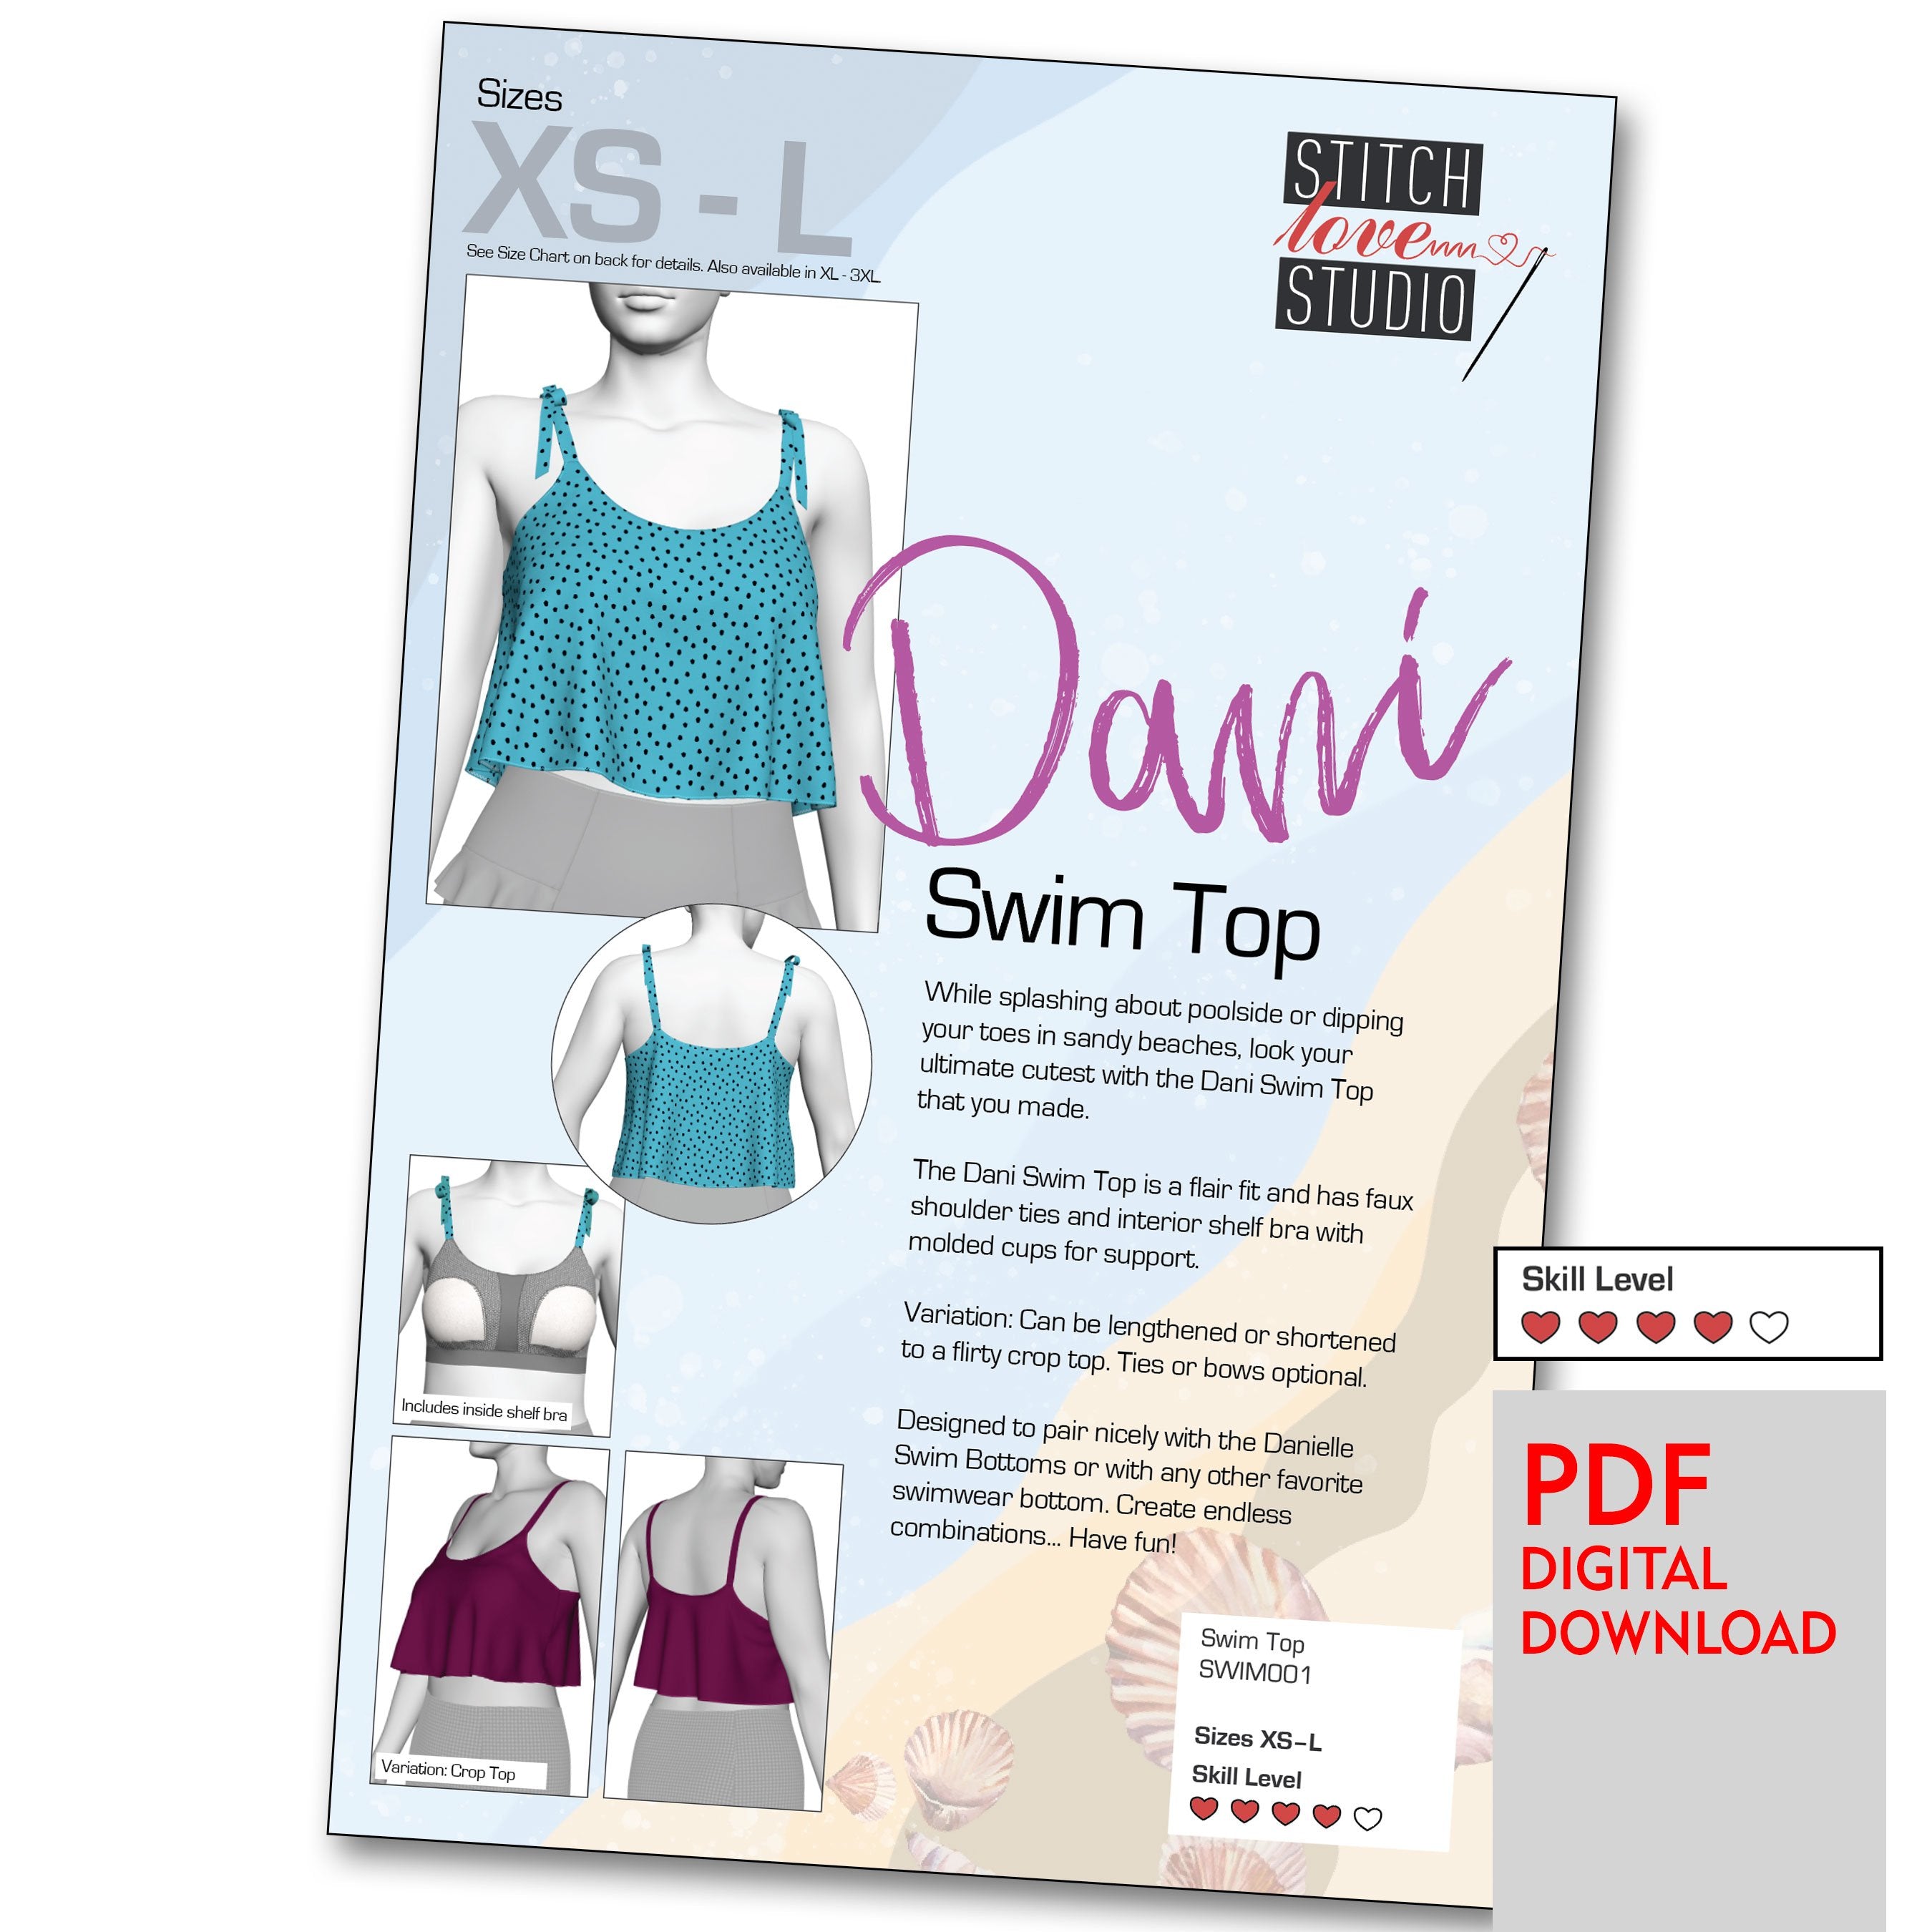 PDF Primrose Dawn Sewing Pattern- Maritza Sports Bra – Stitch Love